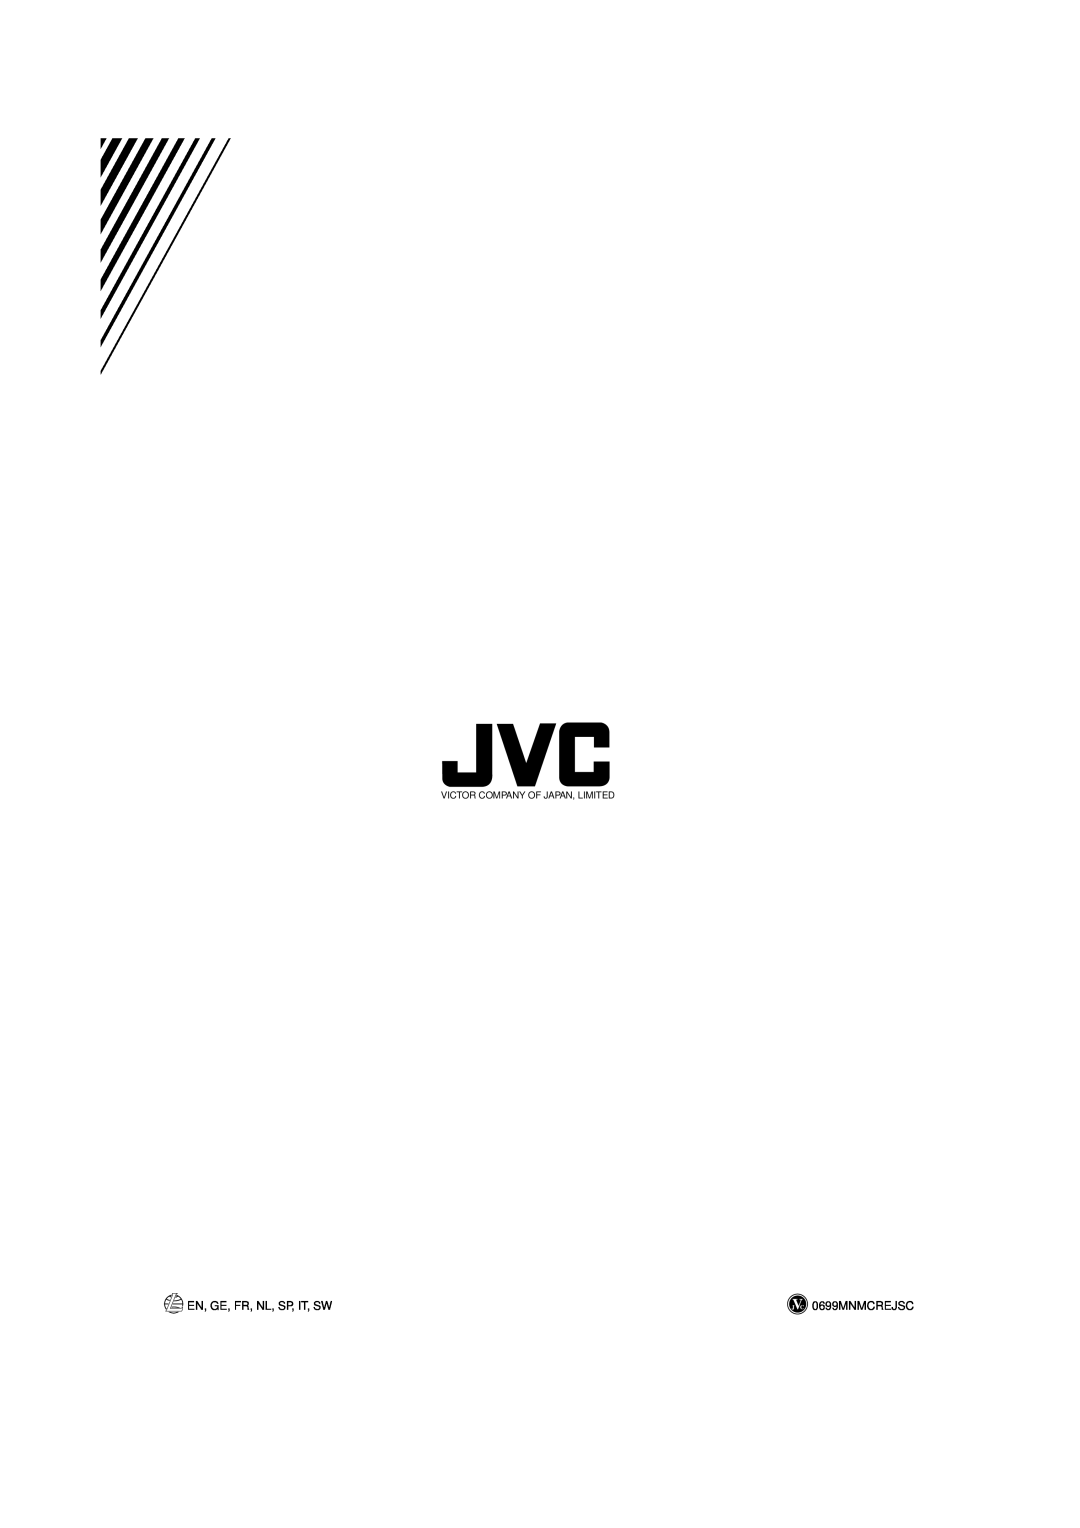 JVC UX-V55R manual En, Ge, Fr, Nl, Sp, It, Sw, 0699MNMCREJSC, Victor Company Of Japan, Limited 